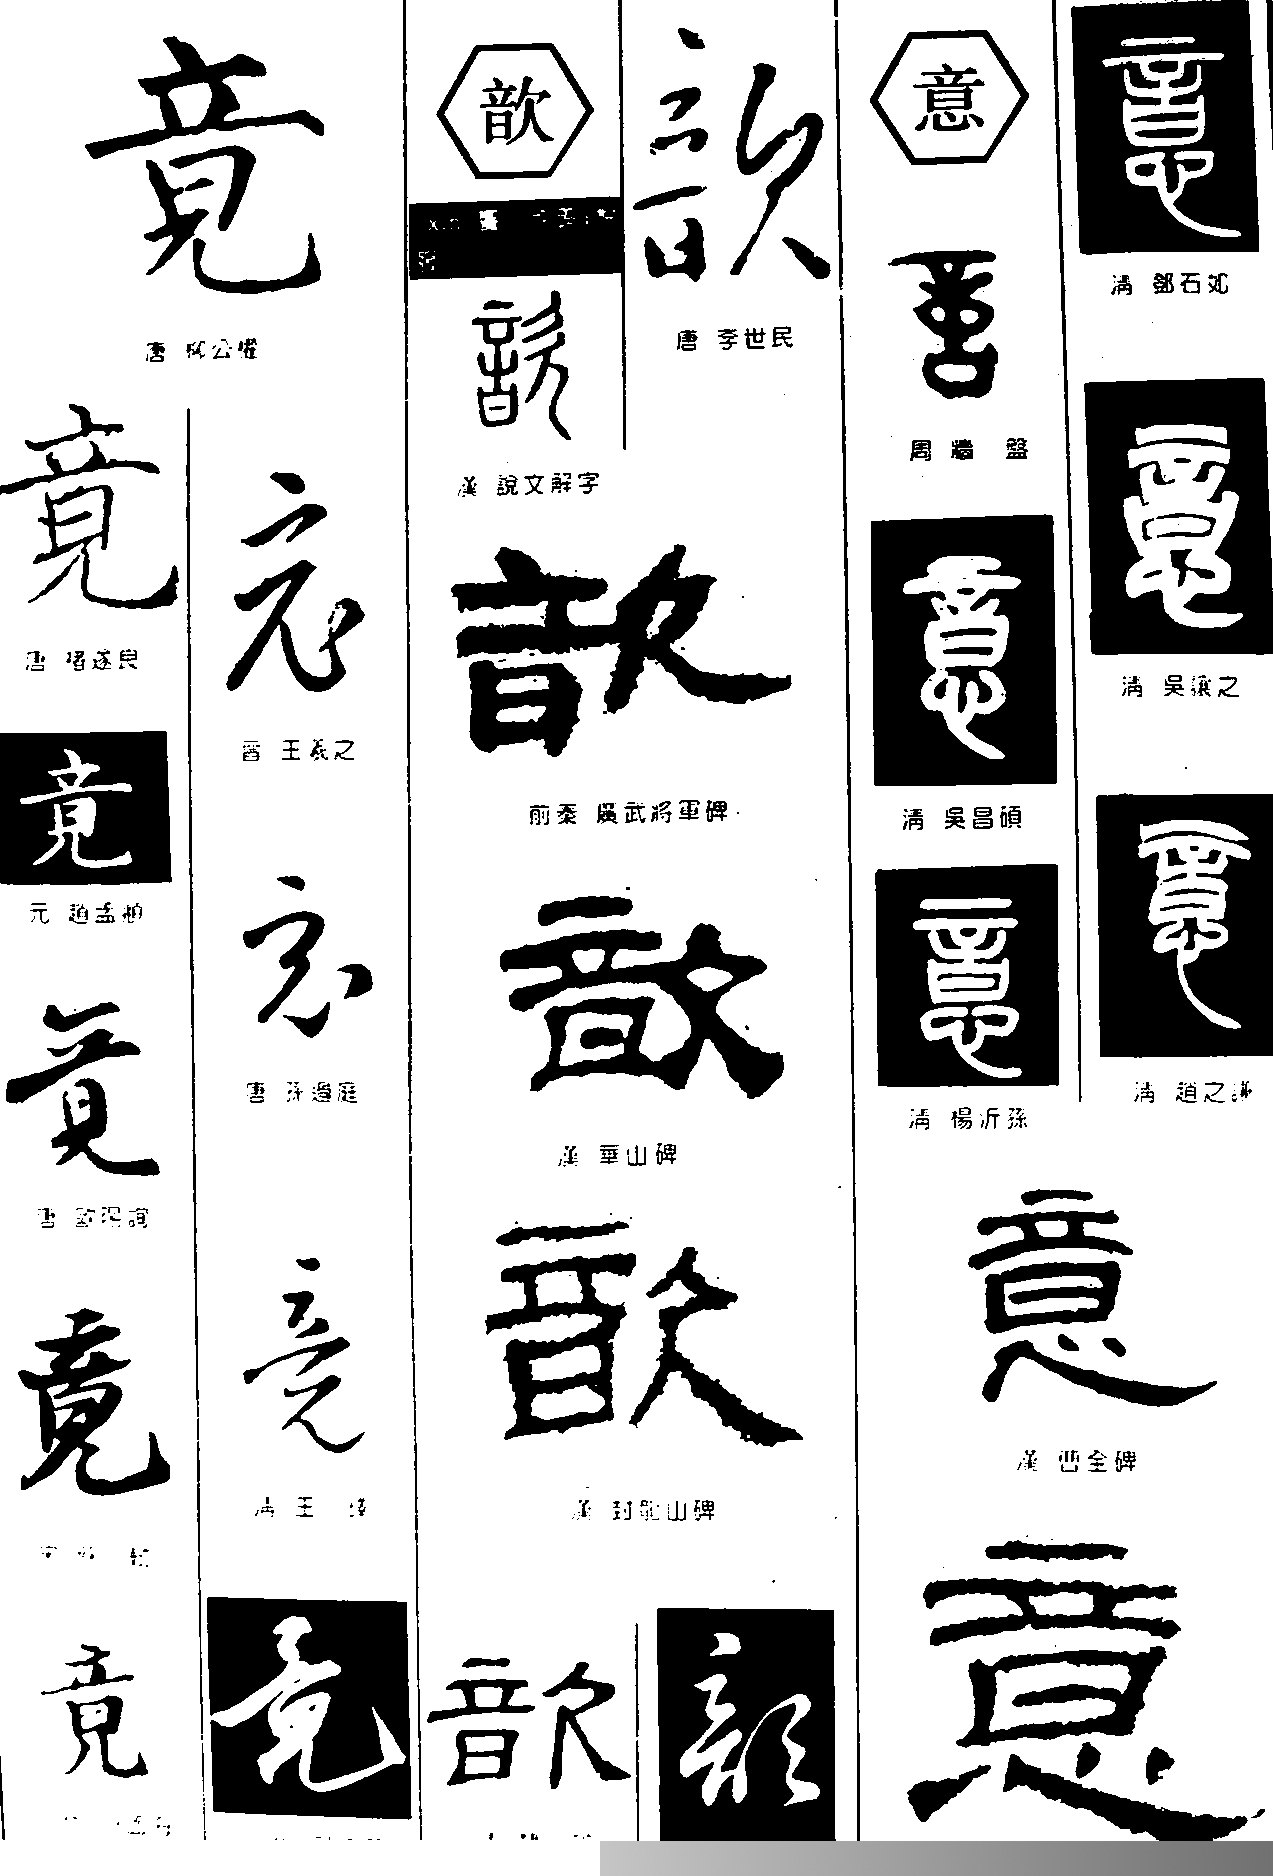 漢字: 竟的筆畫順序 (“竟”11劃) | ️筆順字典📘